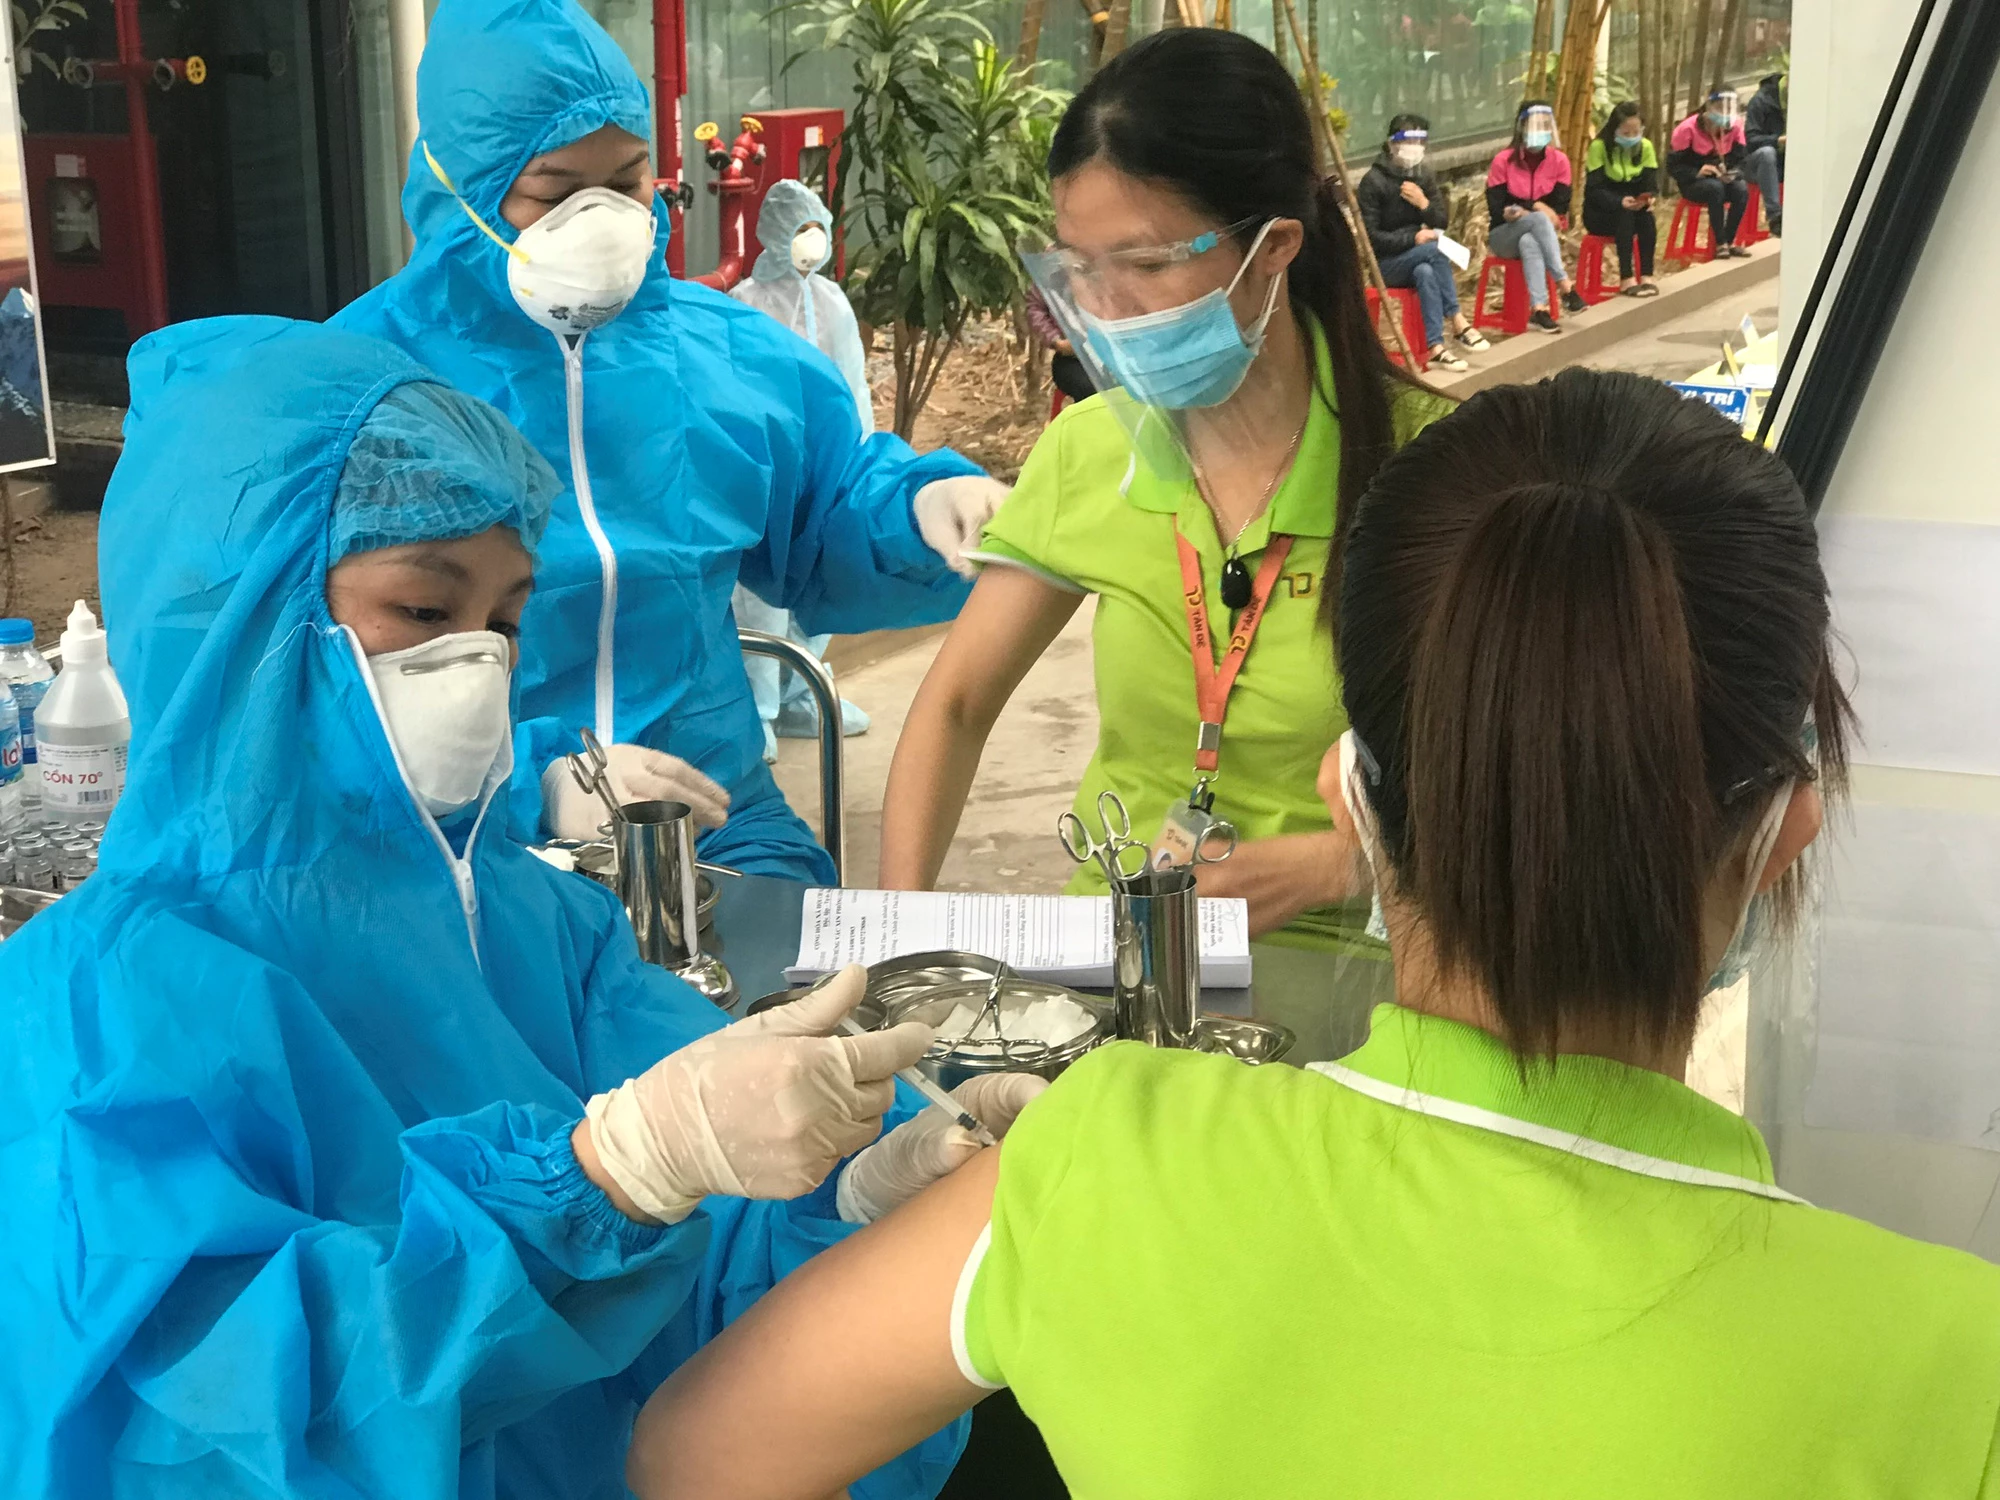 Đến nay, Việt Nam đã đạt trên 70% dân số được tiêm đủ liều cơ bản vaccine phòng COVID-19, so với mục tiêu WHO khuyến cáo, Việt Nam đã về đích trước 6 tháng. Dự kiến Việt Nam sẽ hoàn thành tiêm phủ mũi 3 vào cuối quý I/2022.Ảnh; Thái Bình